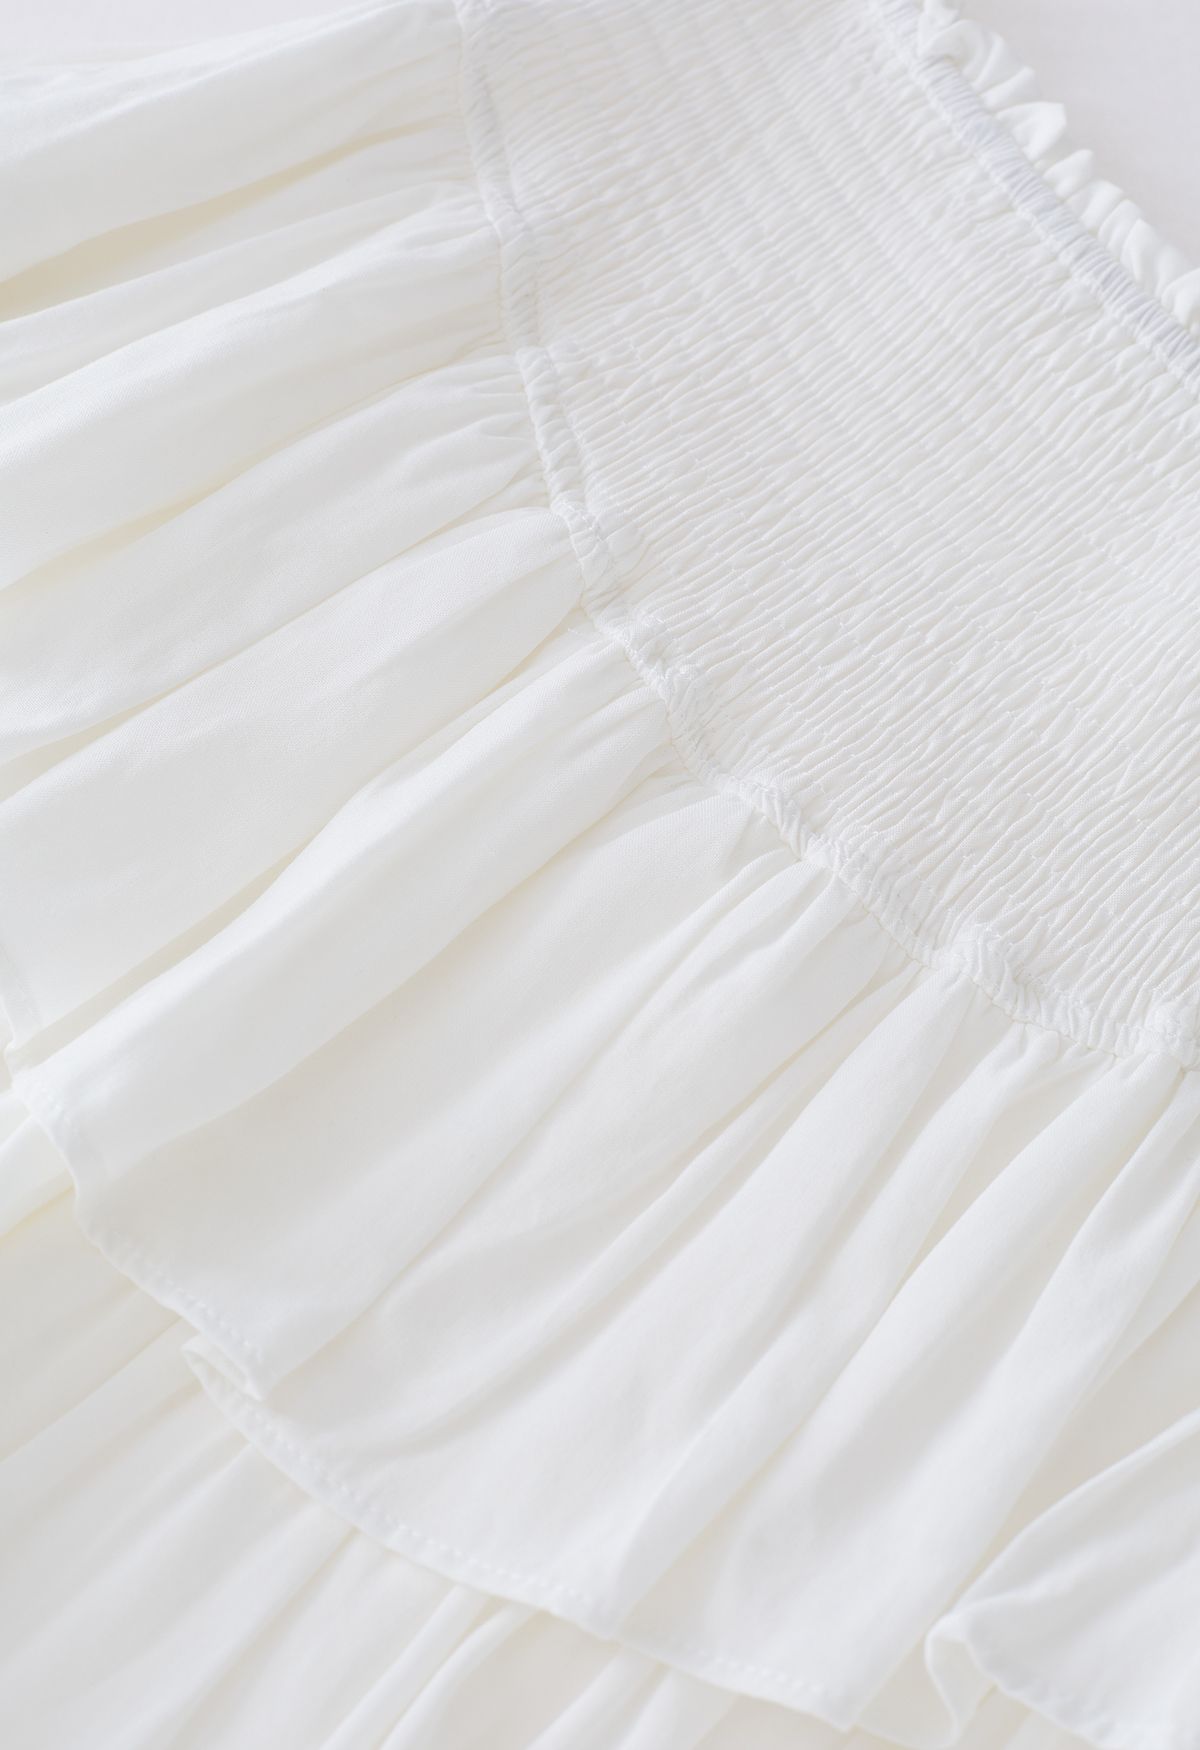 Tiered Ruffle Shirred Waist Mini Skirt in White